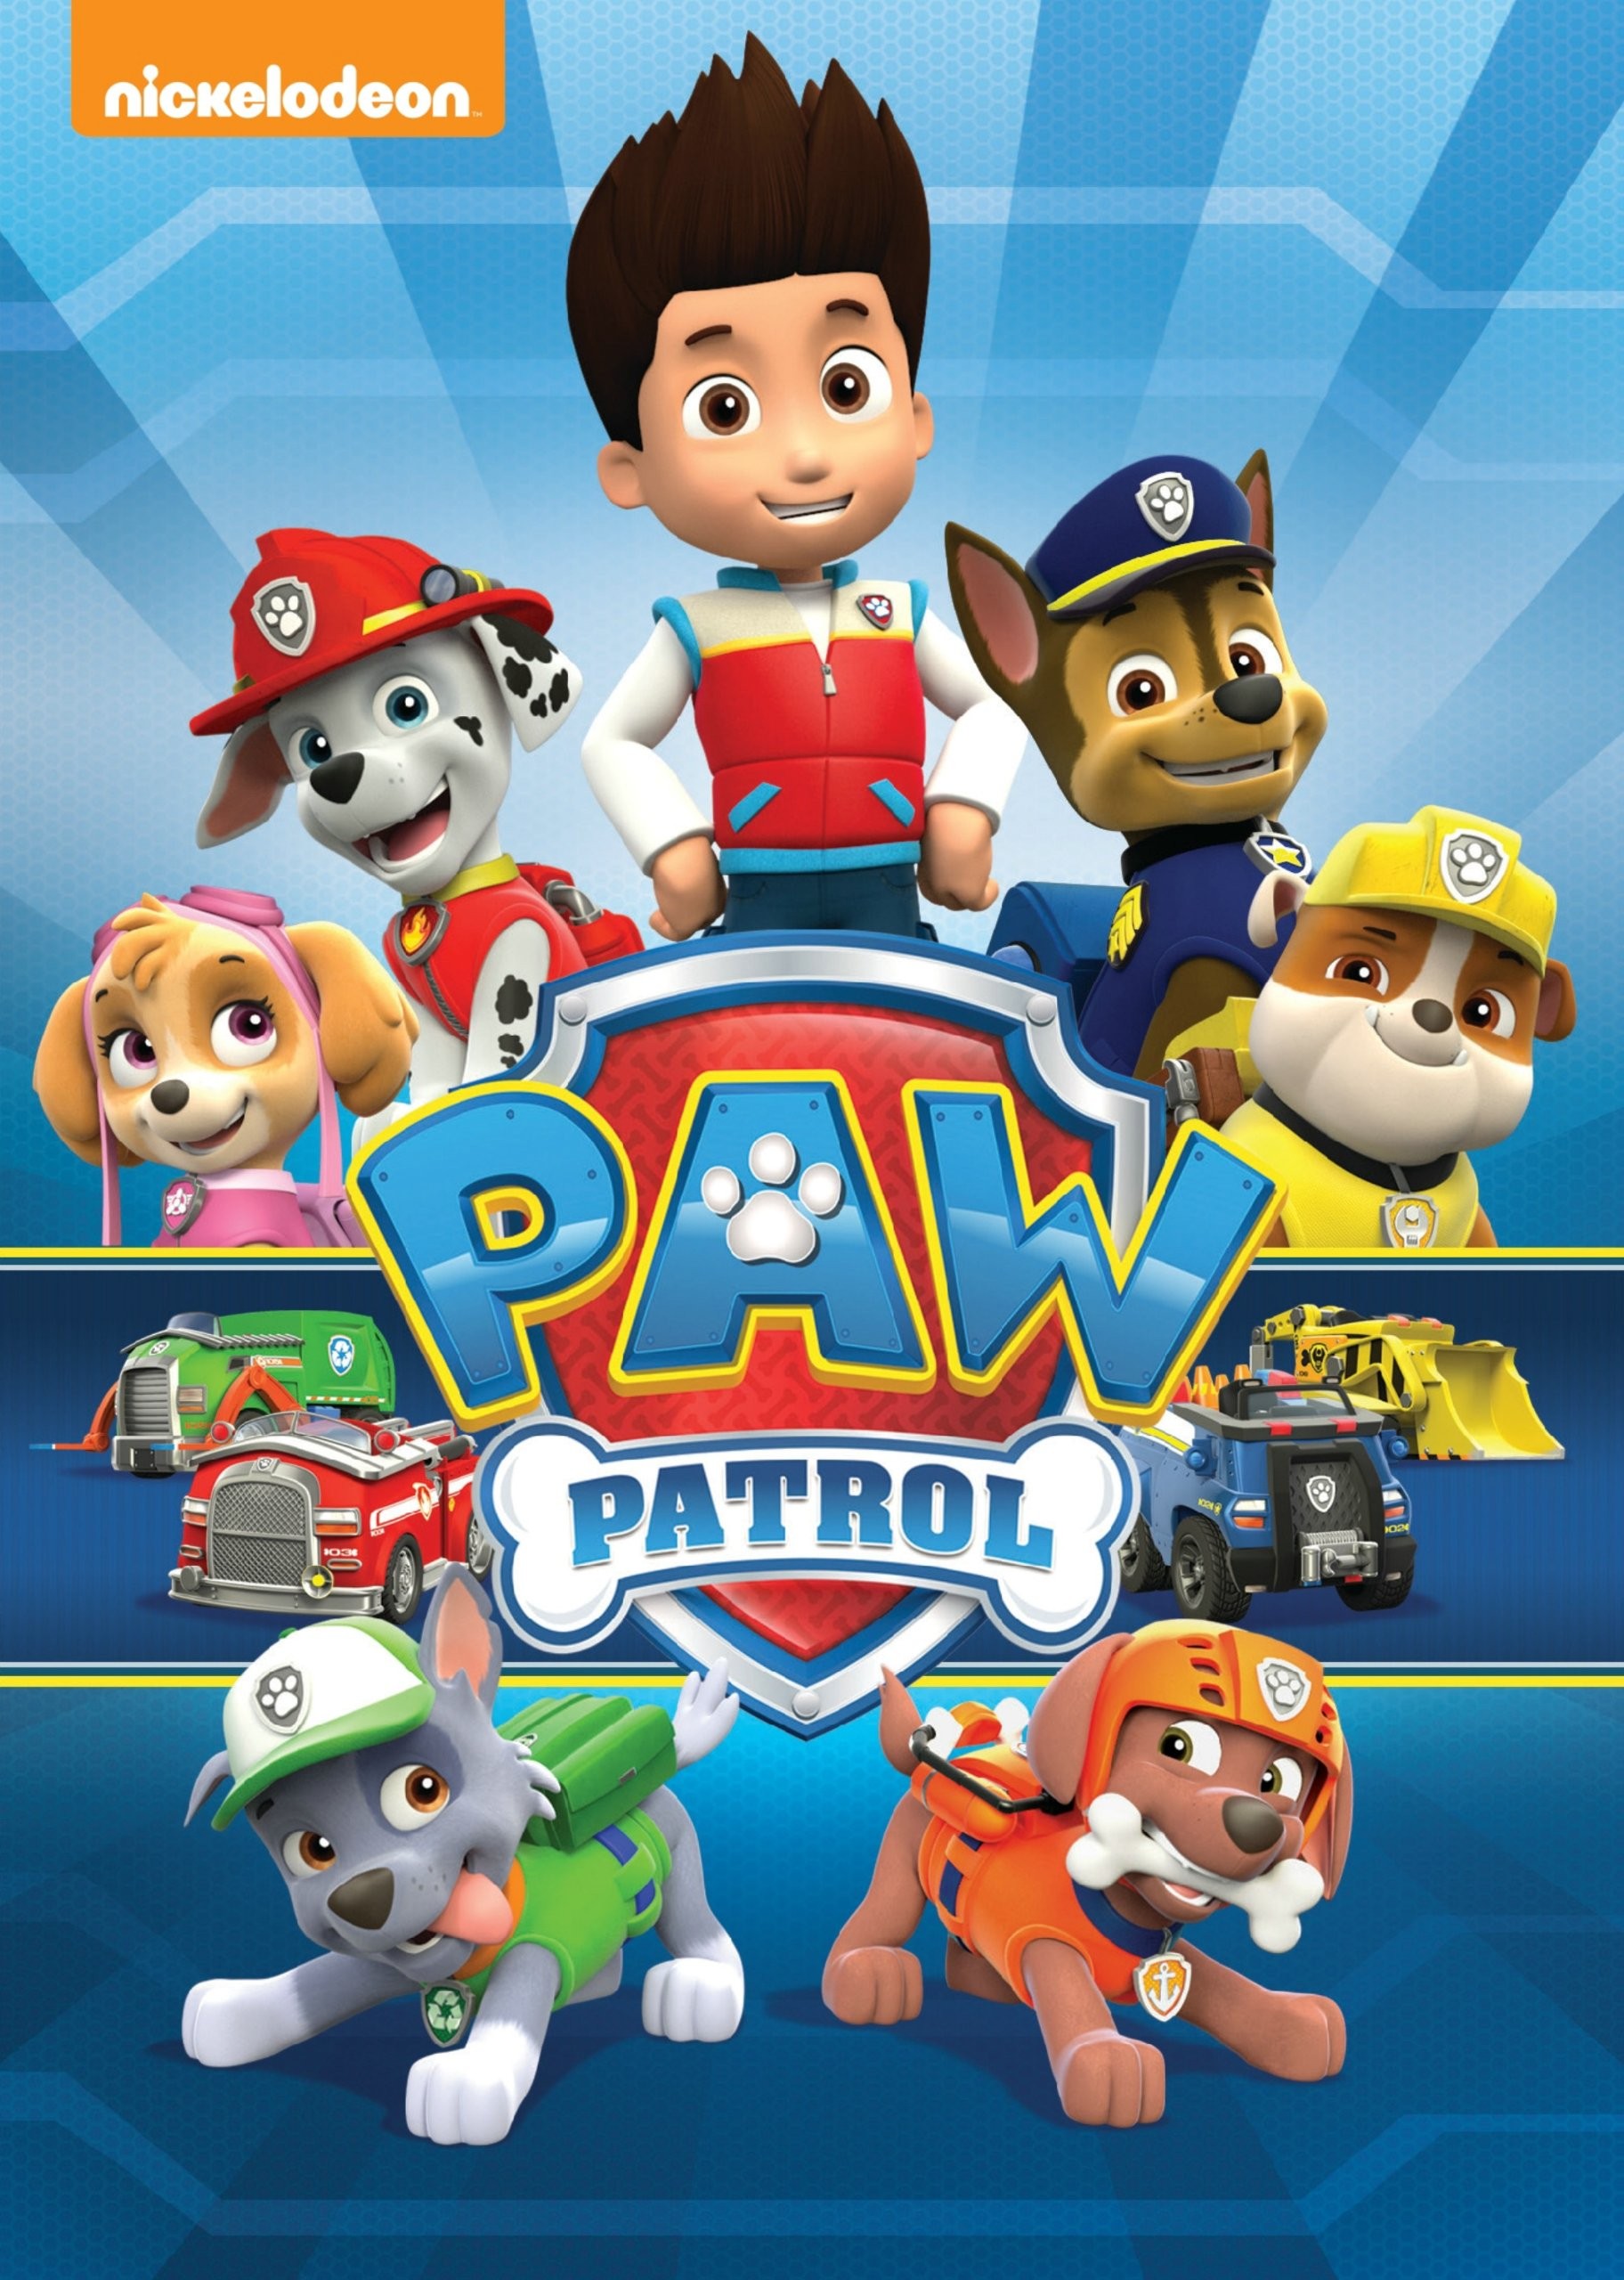 paw patrol download free